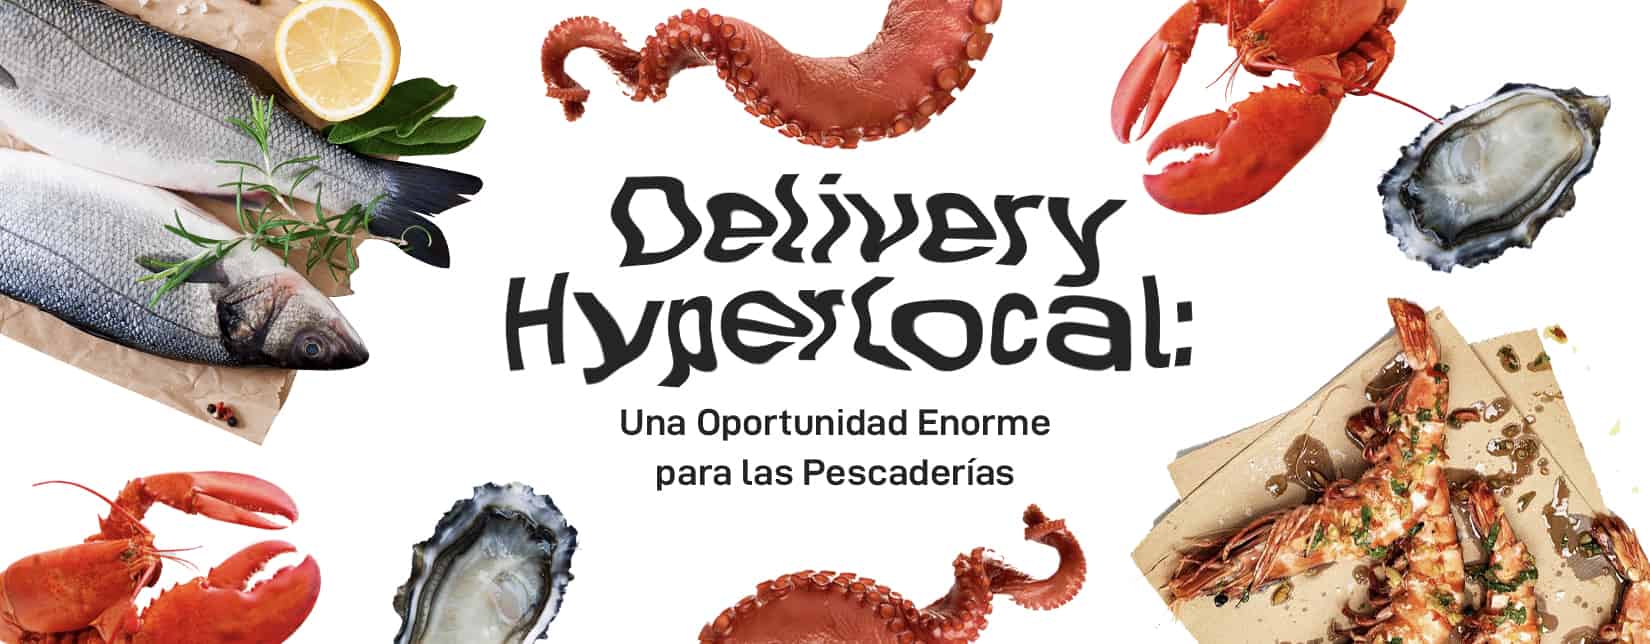 Delivery Hyperlocal: Una Oportunidad Enorme para las Pescaderías